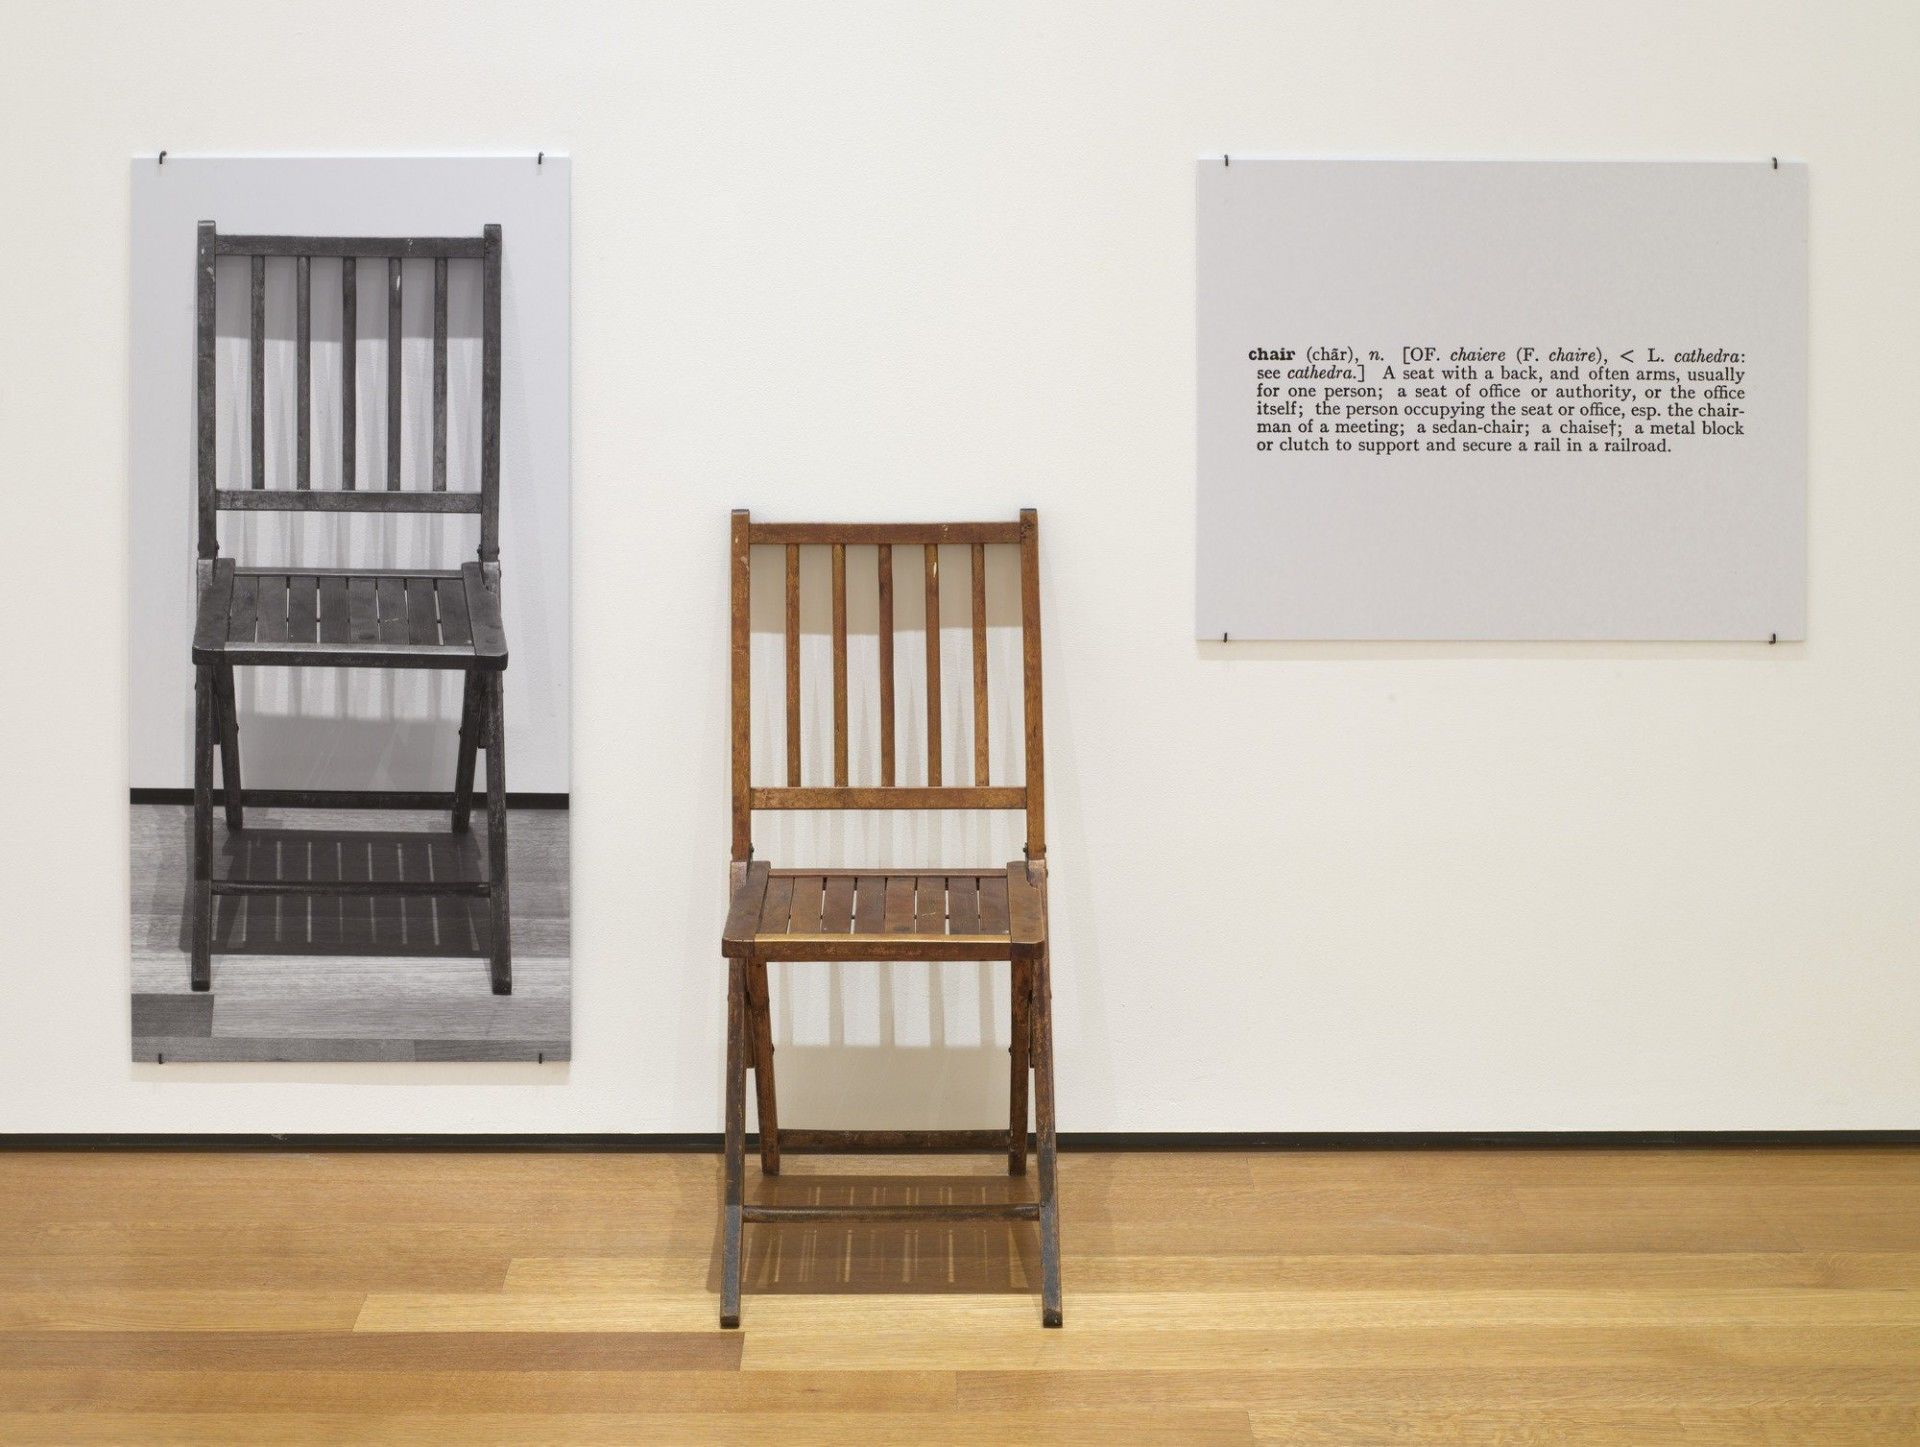 6. Muestra de arte contemporáneo de Joseph Kosuth, One and Three Chairs, 1965. Silla plegable de madera, fotografía montada de una silla y ampliación fotográfica montada de la definición de 